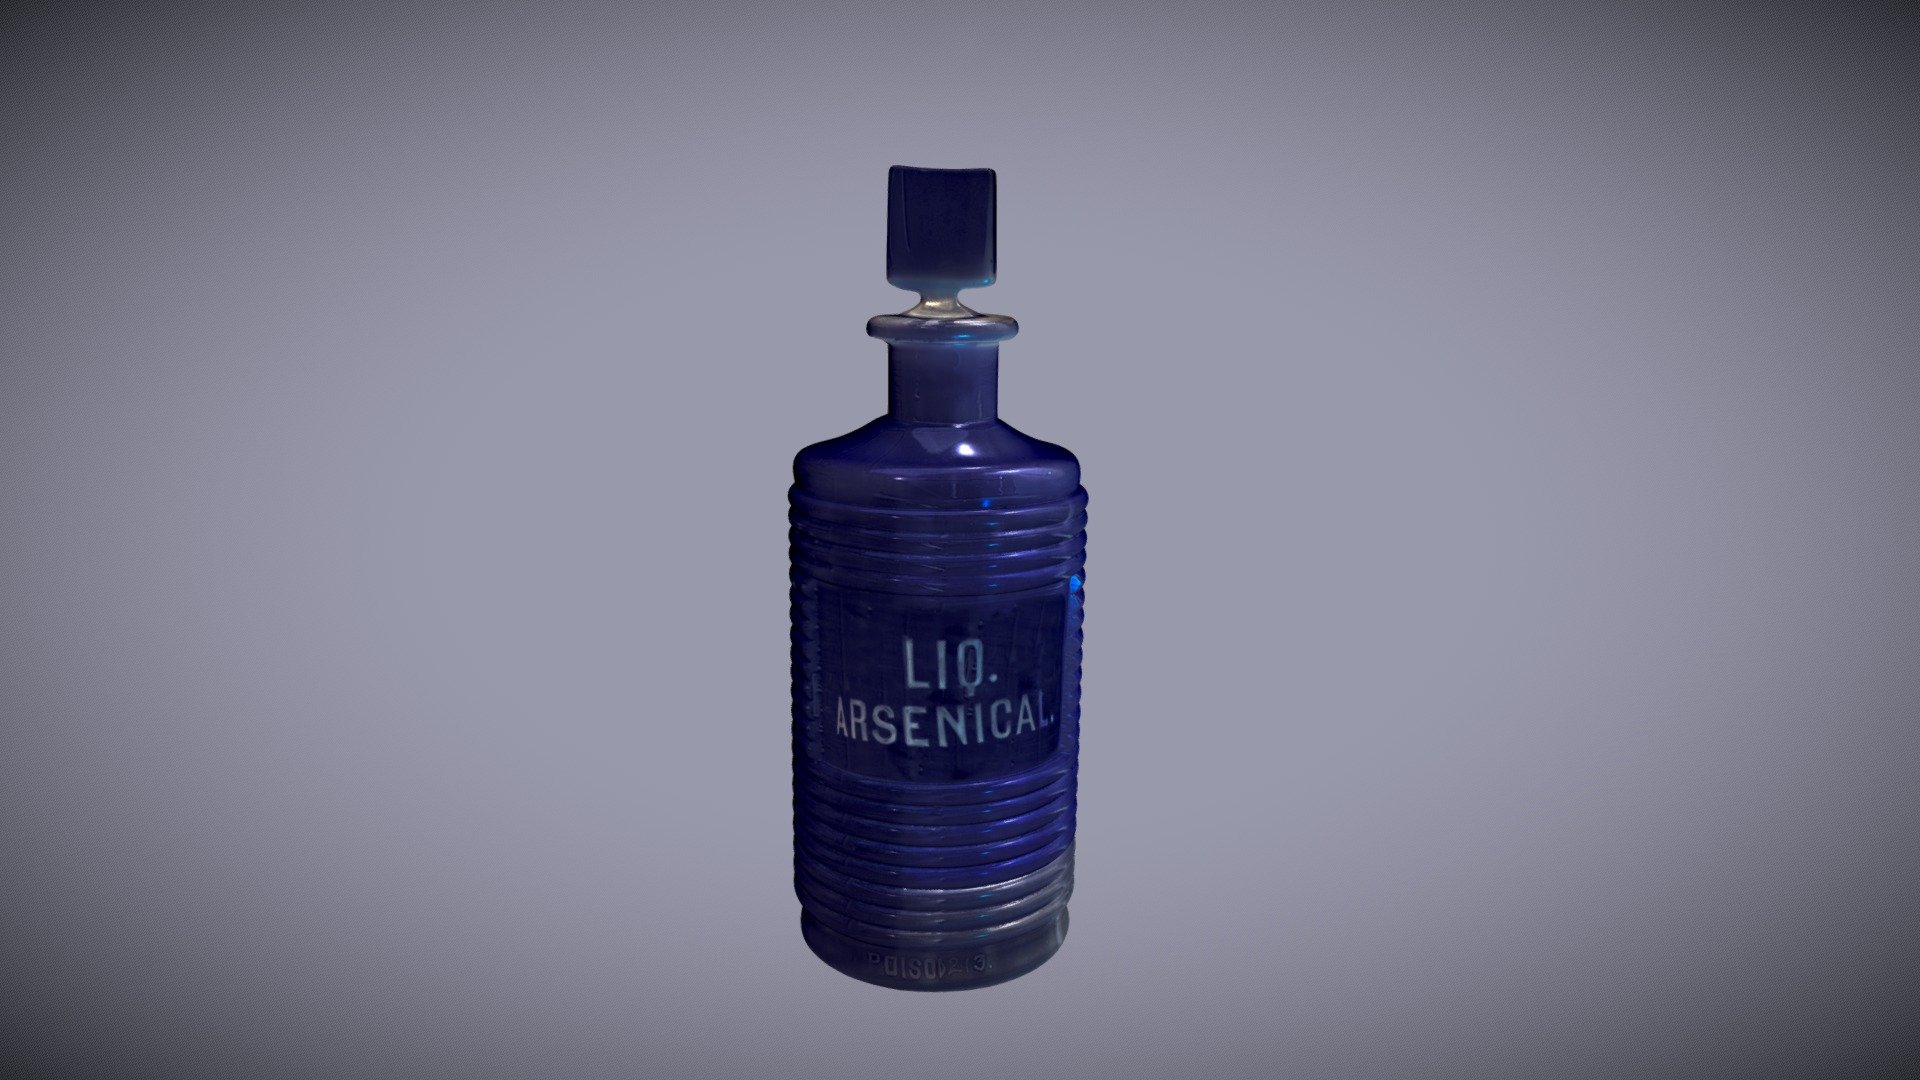 Blue ridged glass bottle for arsenic